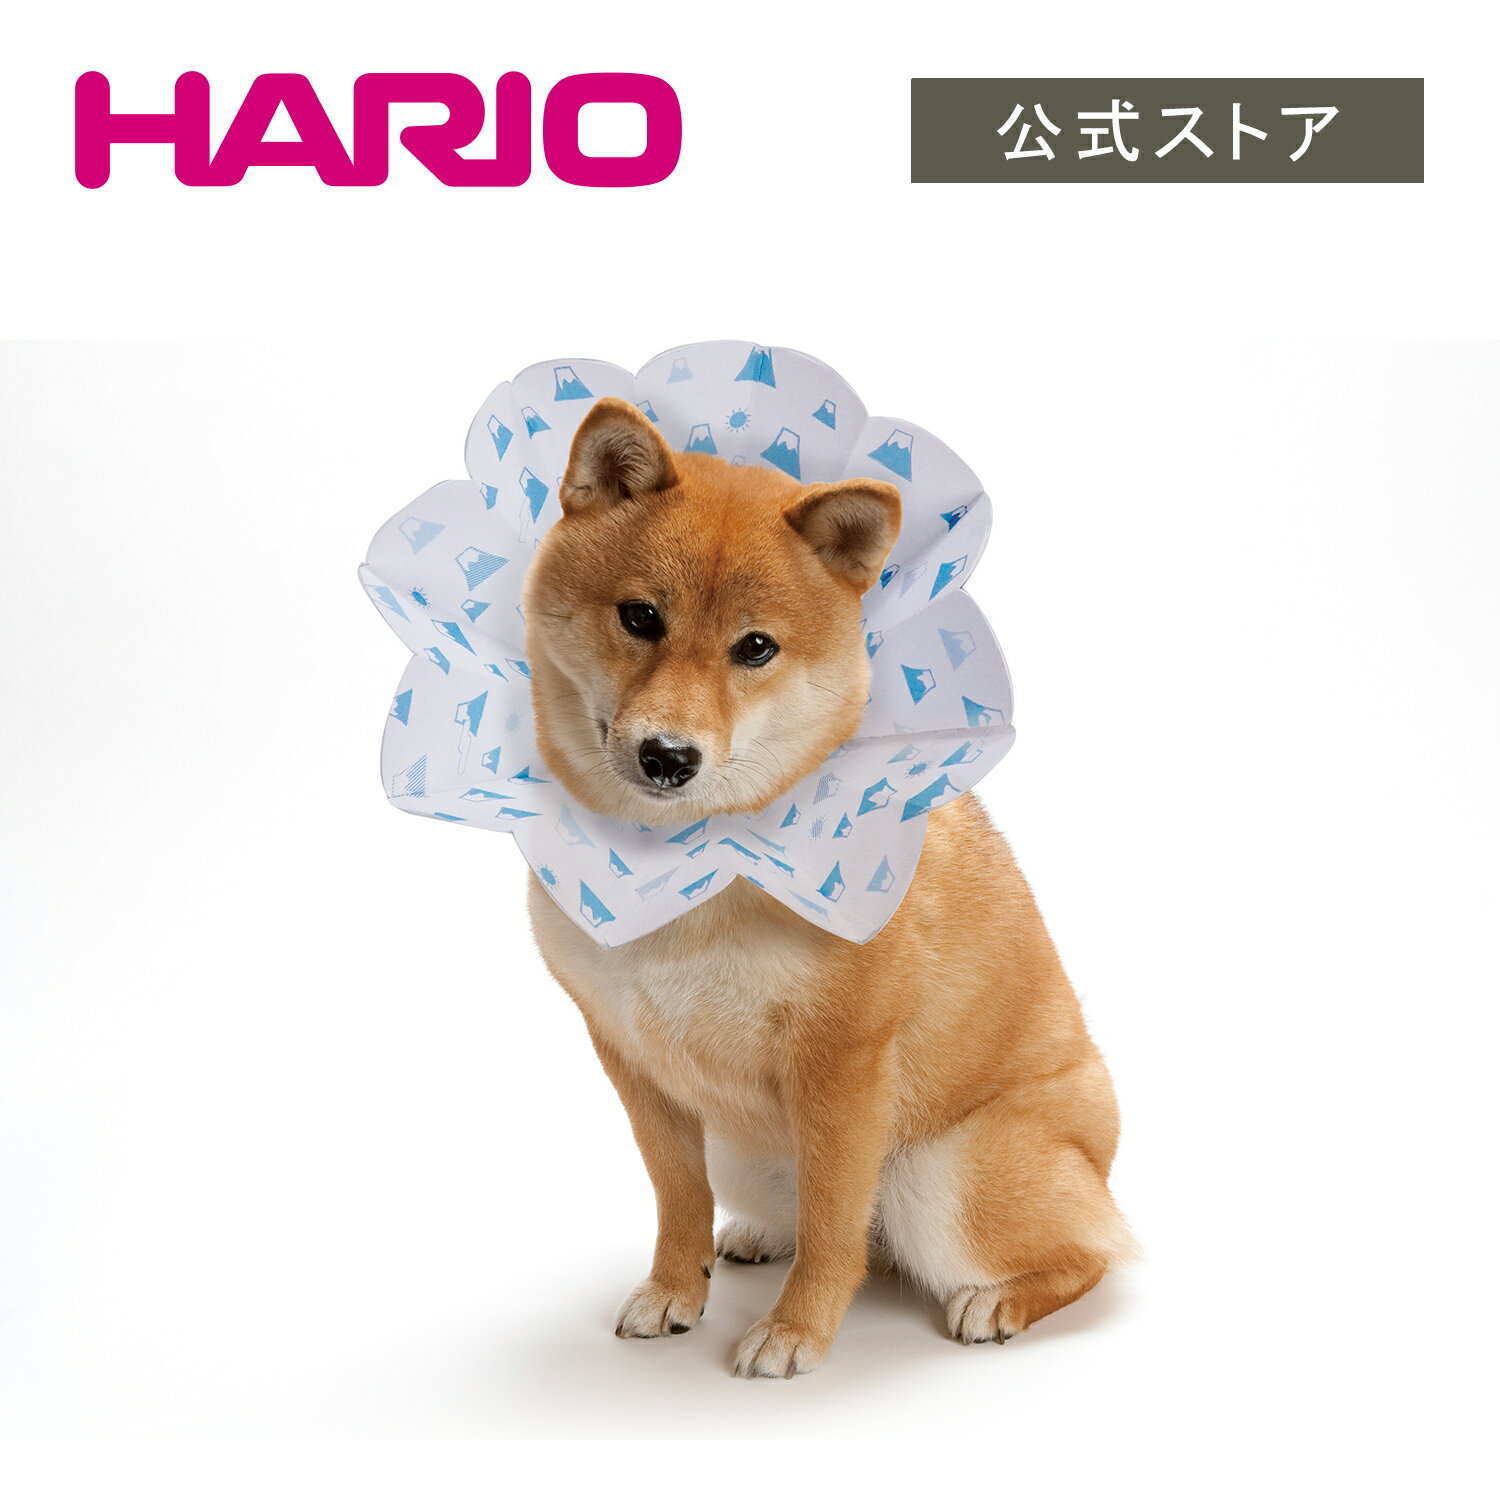 コンパクト エリザベスカラー ペット専用保護具 紙製 犬 猫 小型犬 erico エリコ ハリオ HARIO 公式ショップ